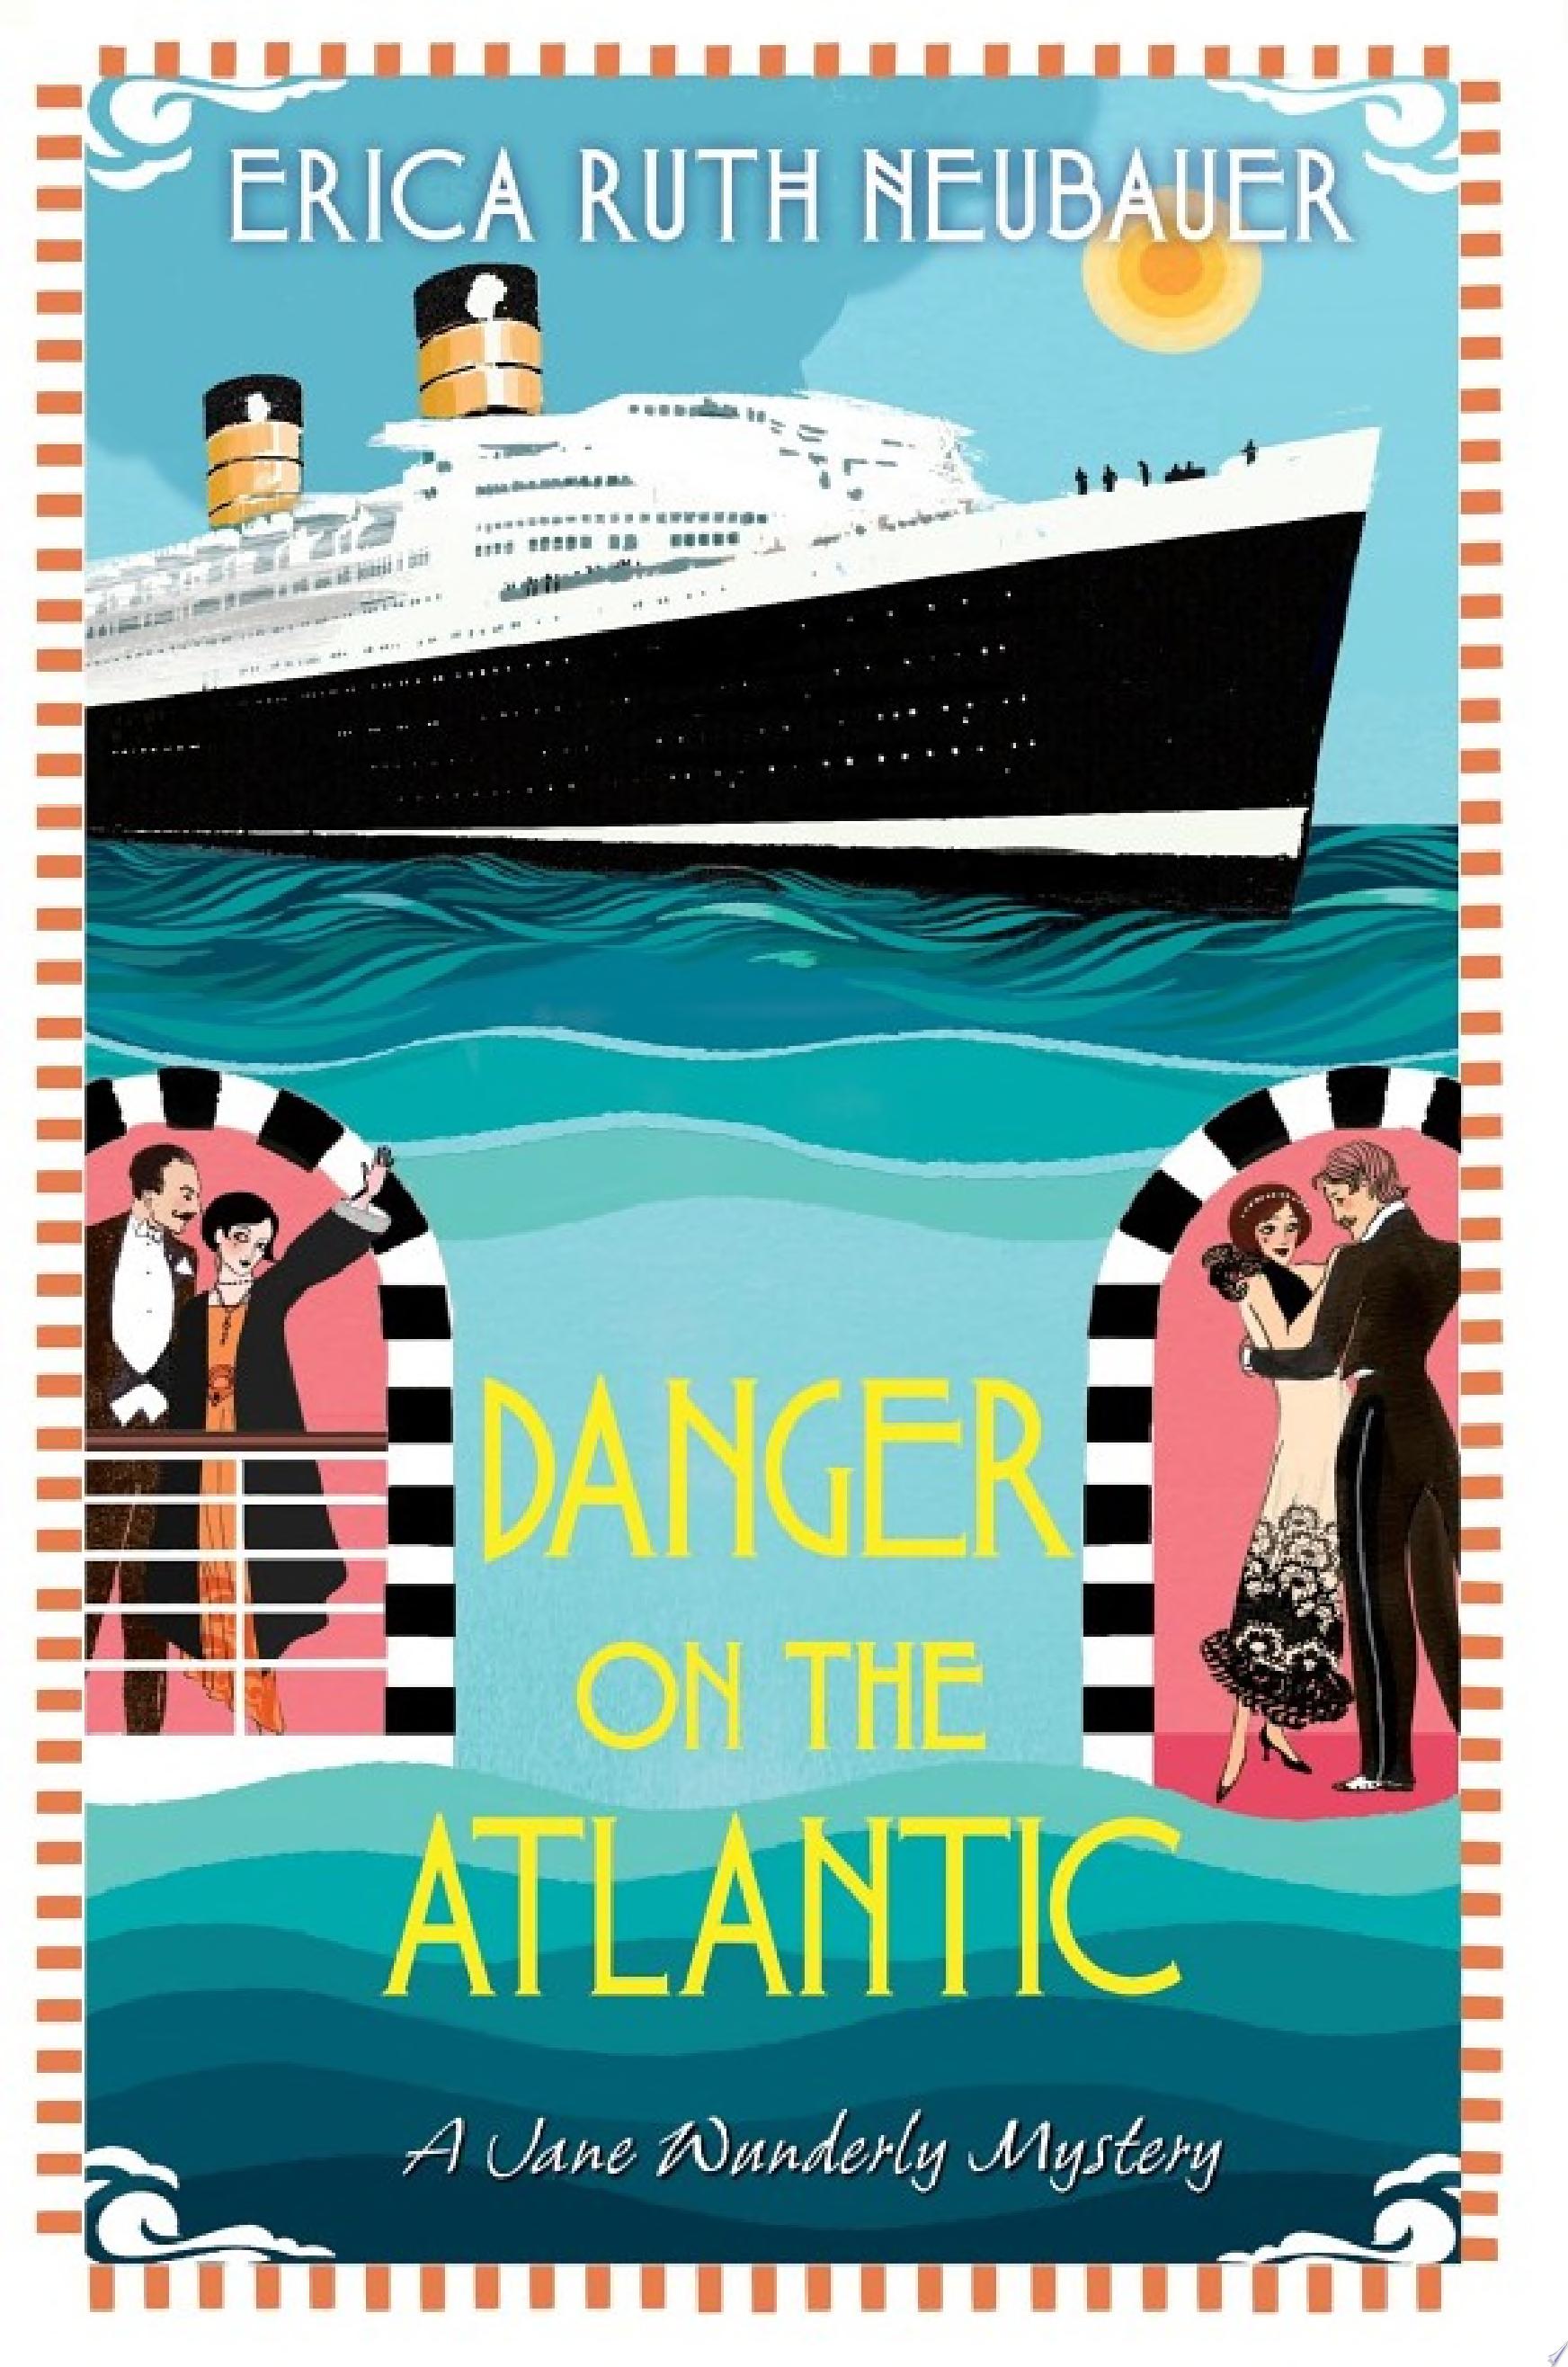 Image for "Danger on the Atlantic"